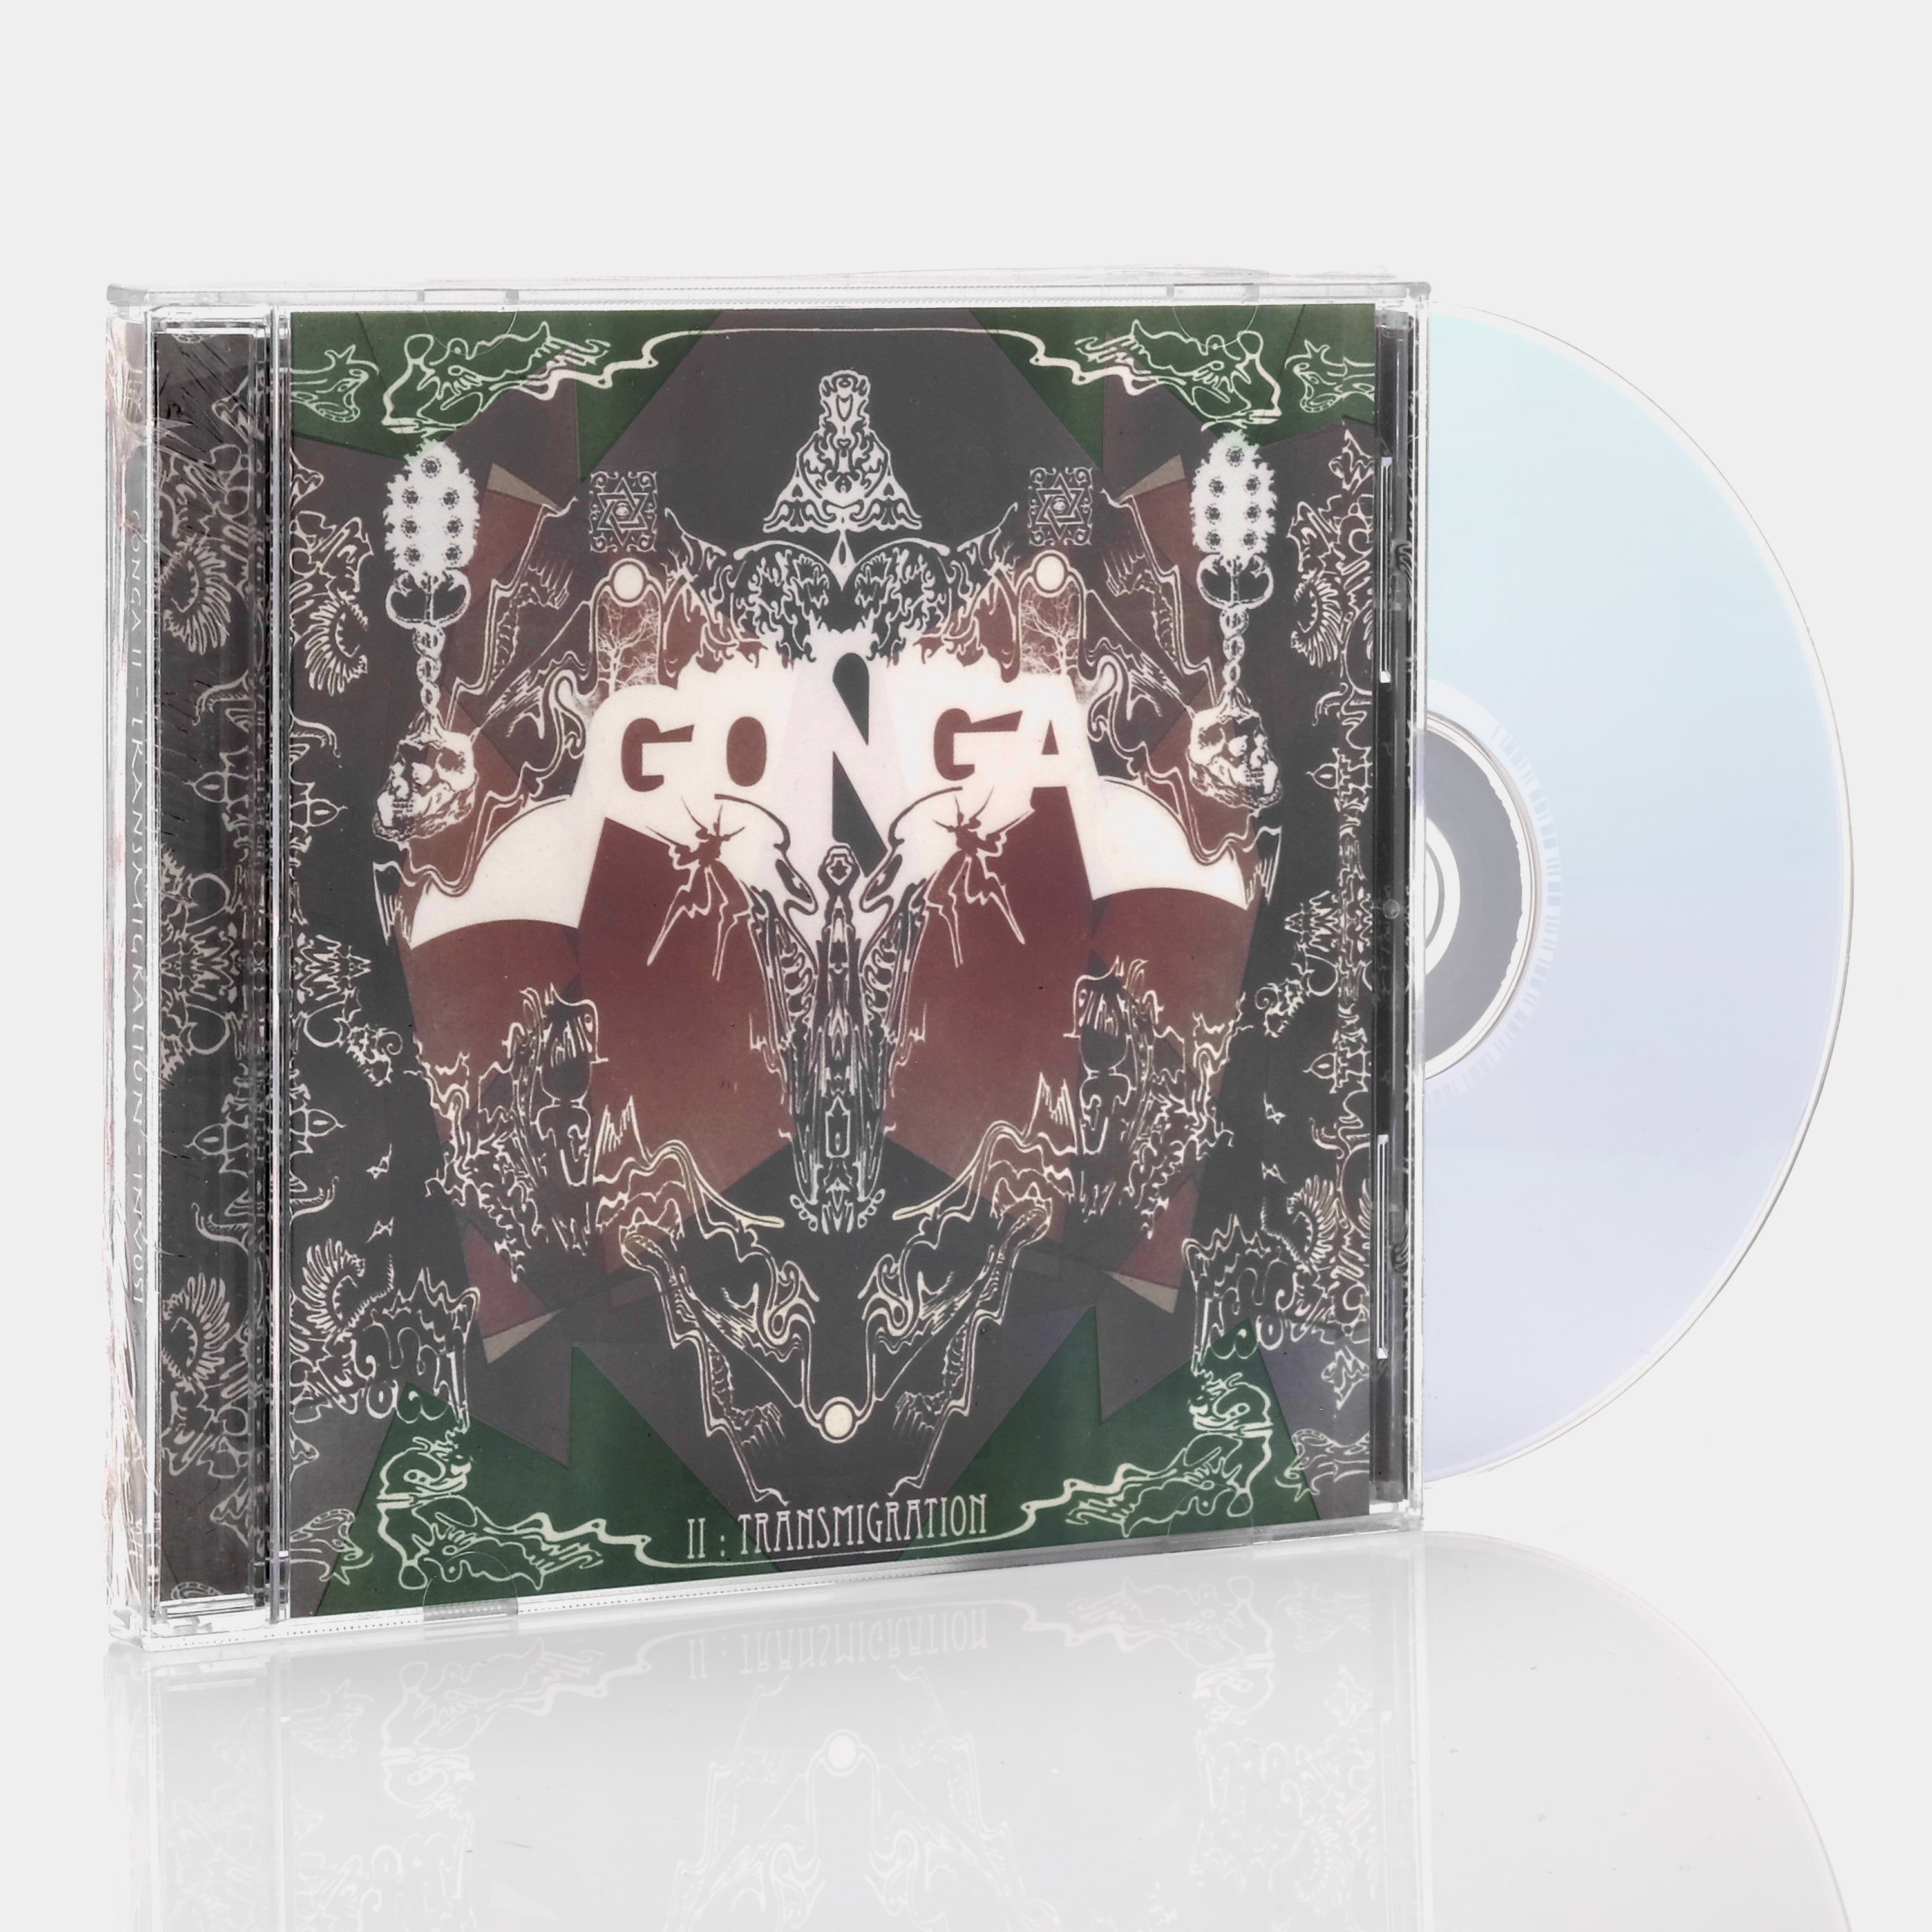 Gonga - II: Transmigration CD